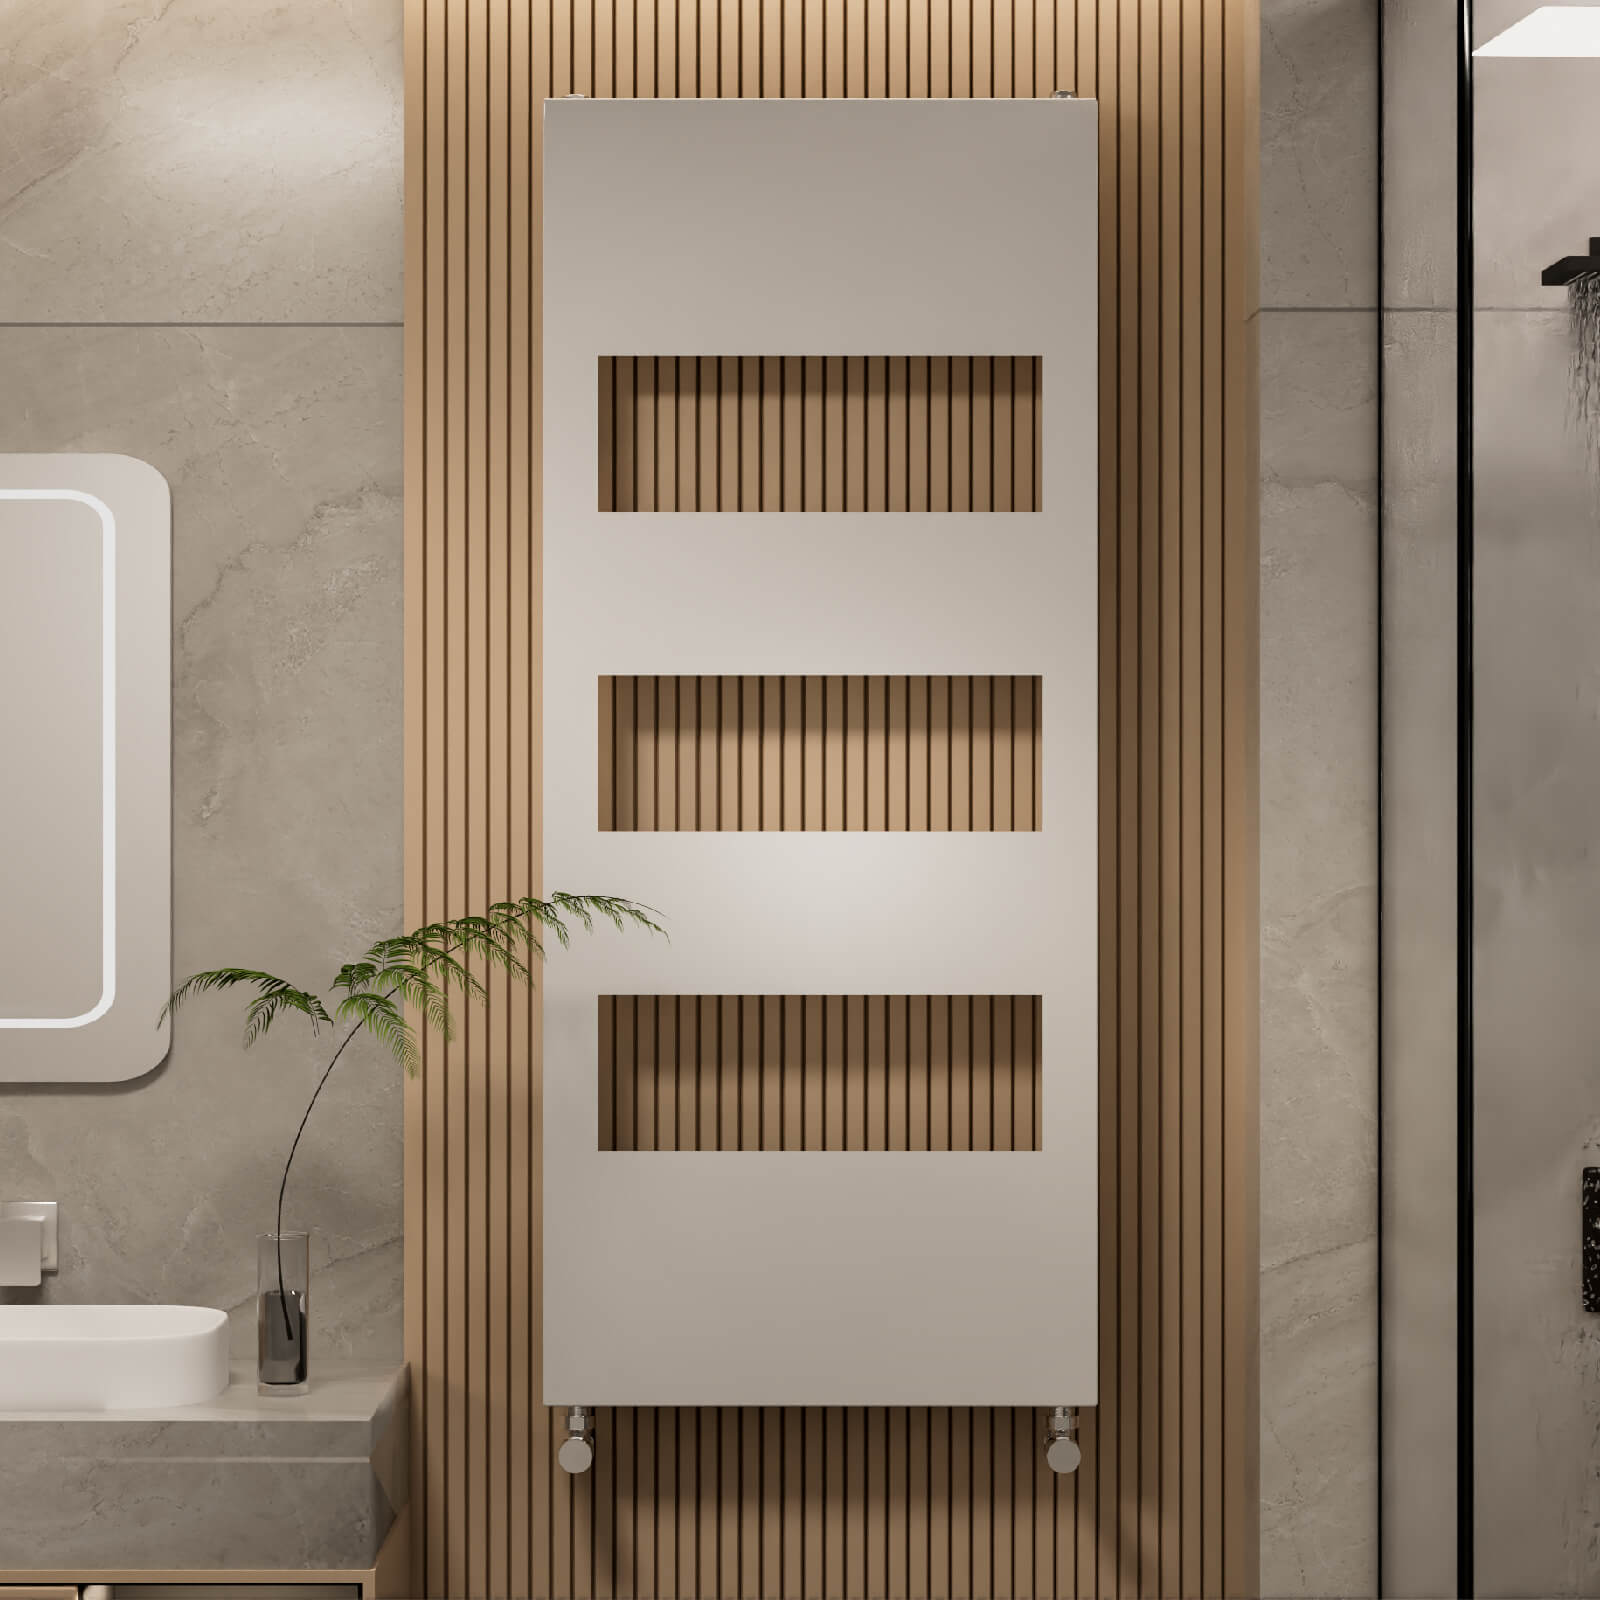 Der EMKE Badheizkörper im modernen Design ist die perfekte Ergänzung für jedes moderne Badezimmer. Dieser stilvolle Handtuchwärmer sorgt nicht nur für Wärme und Komfort